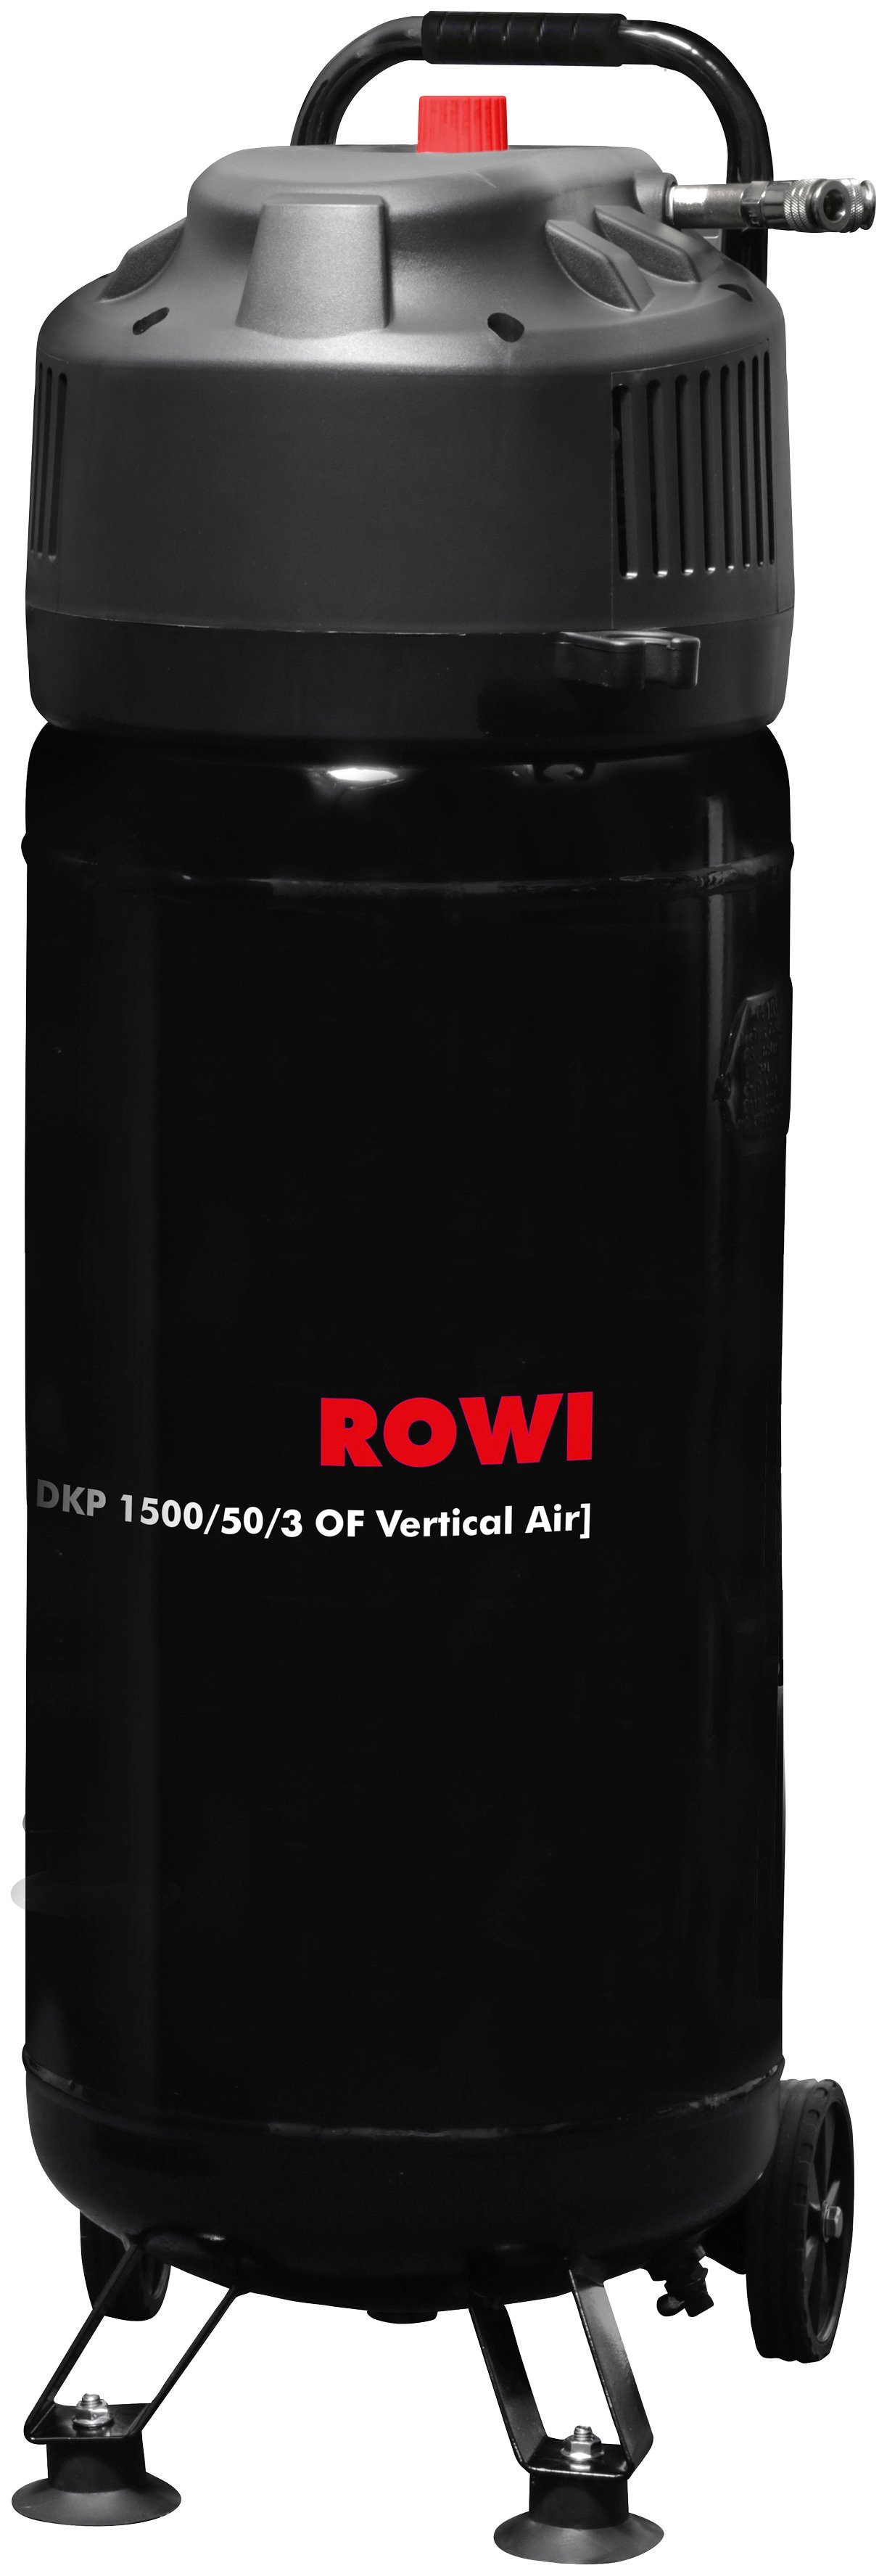 ROWI Kompressor DKP 1500/50/3 OF Vertical Air, 1500 W, max. 10 bar, 50 l | Druckluftgeräte